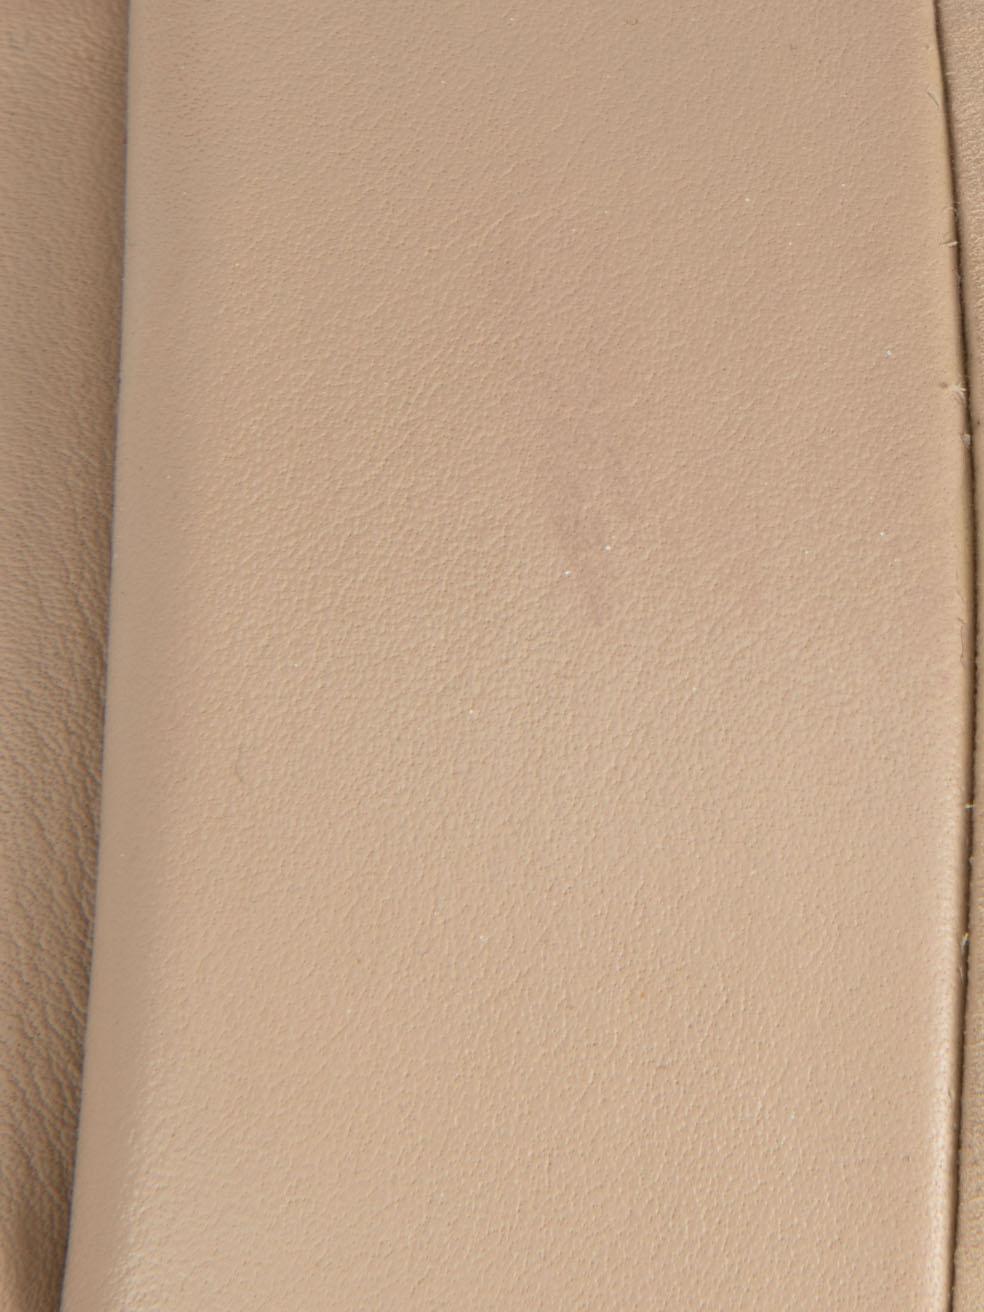 Beige Leather Slingback Platform Sandals Size UK 3.5 For Sale 1